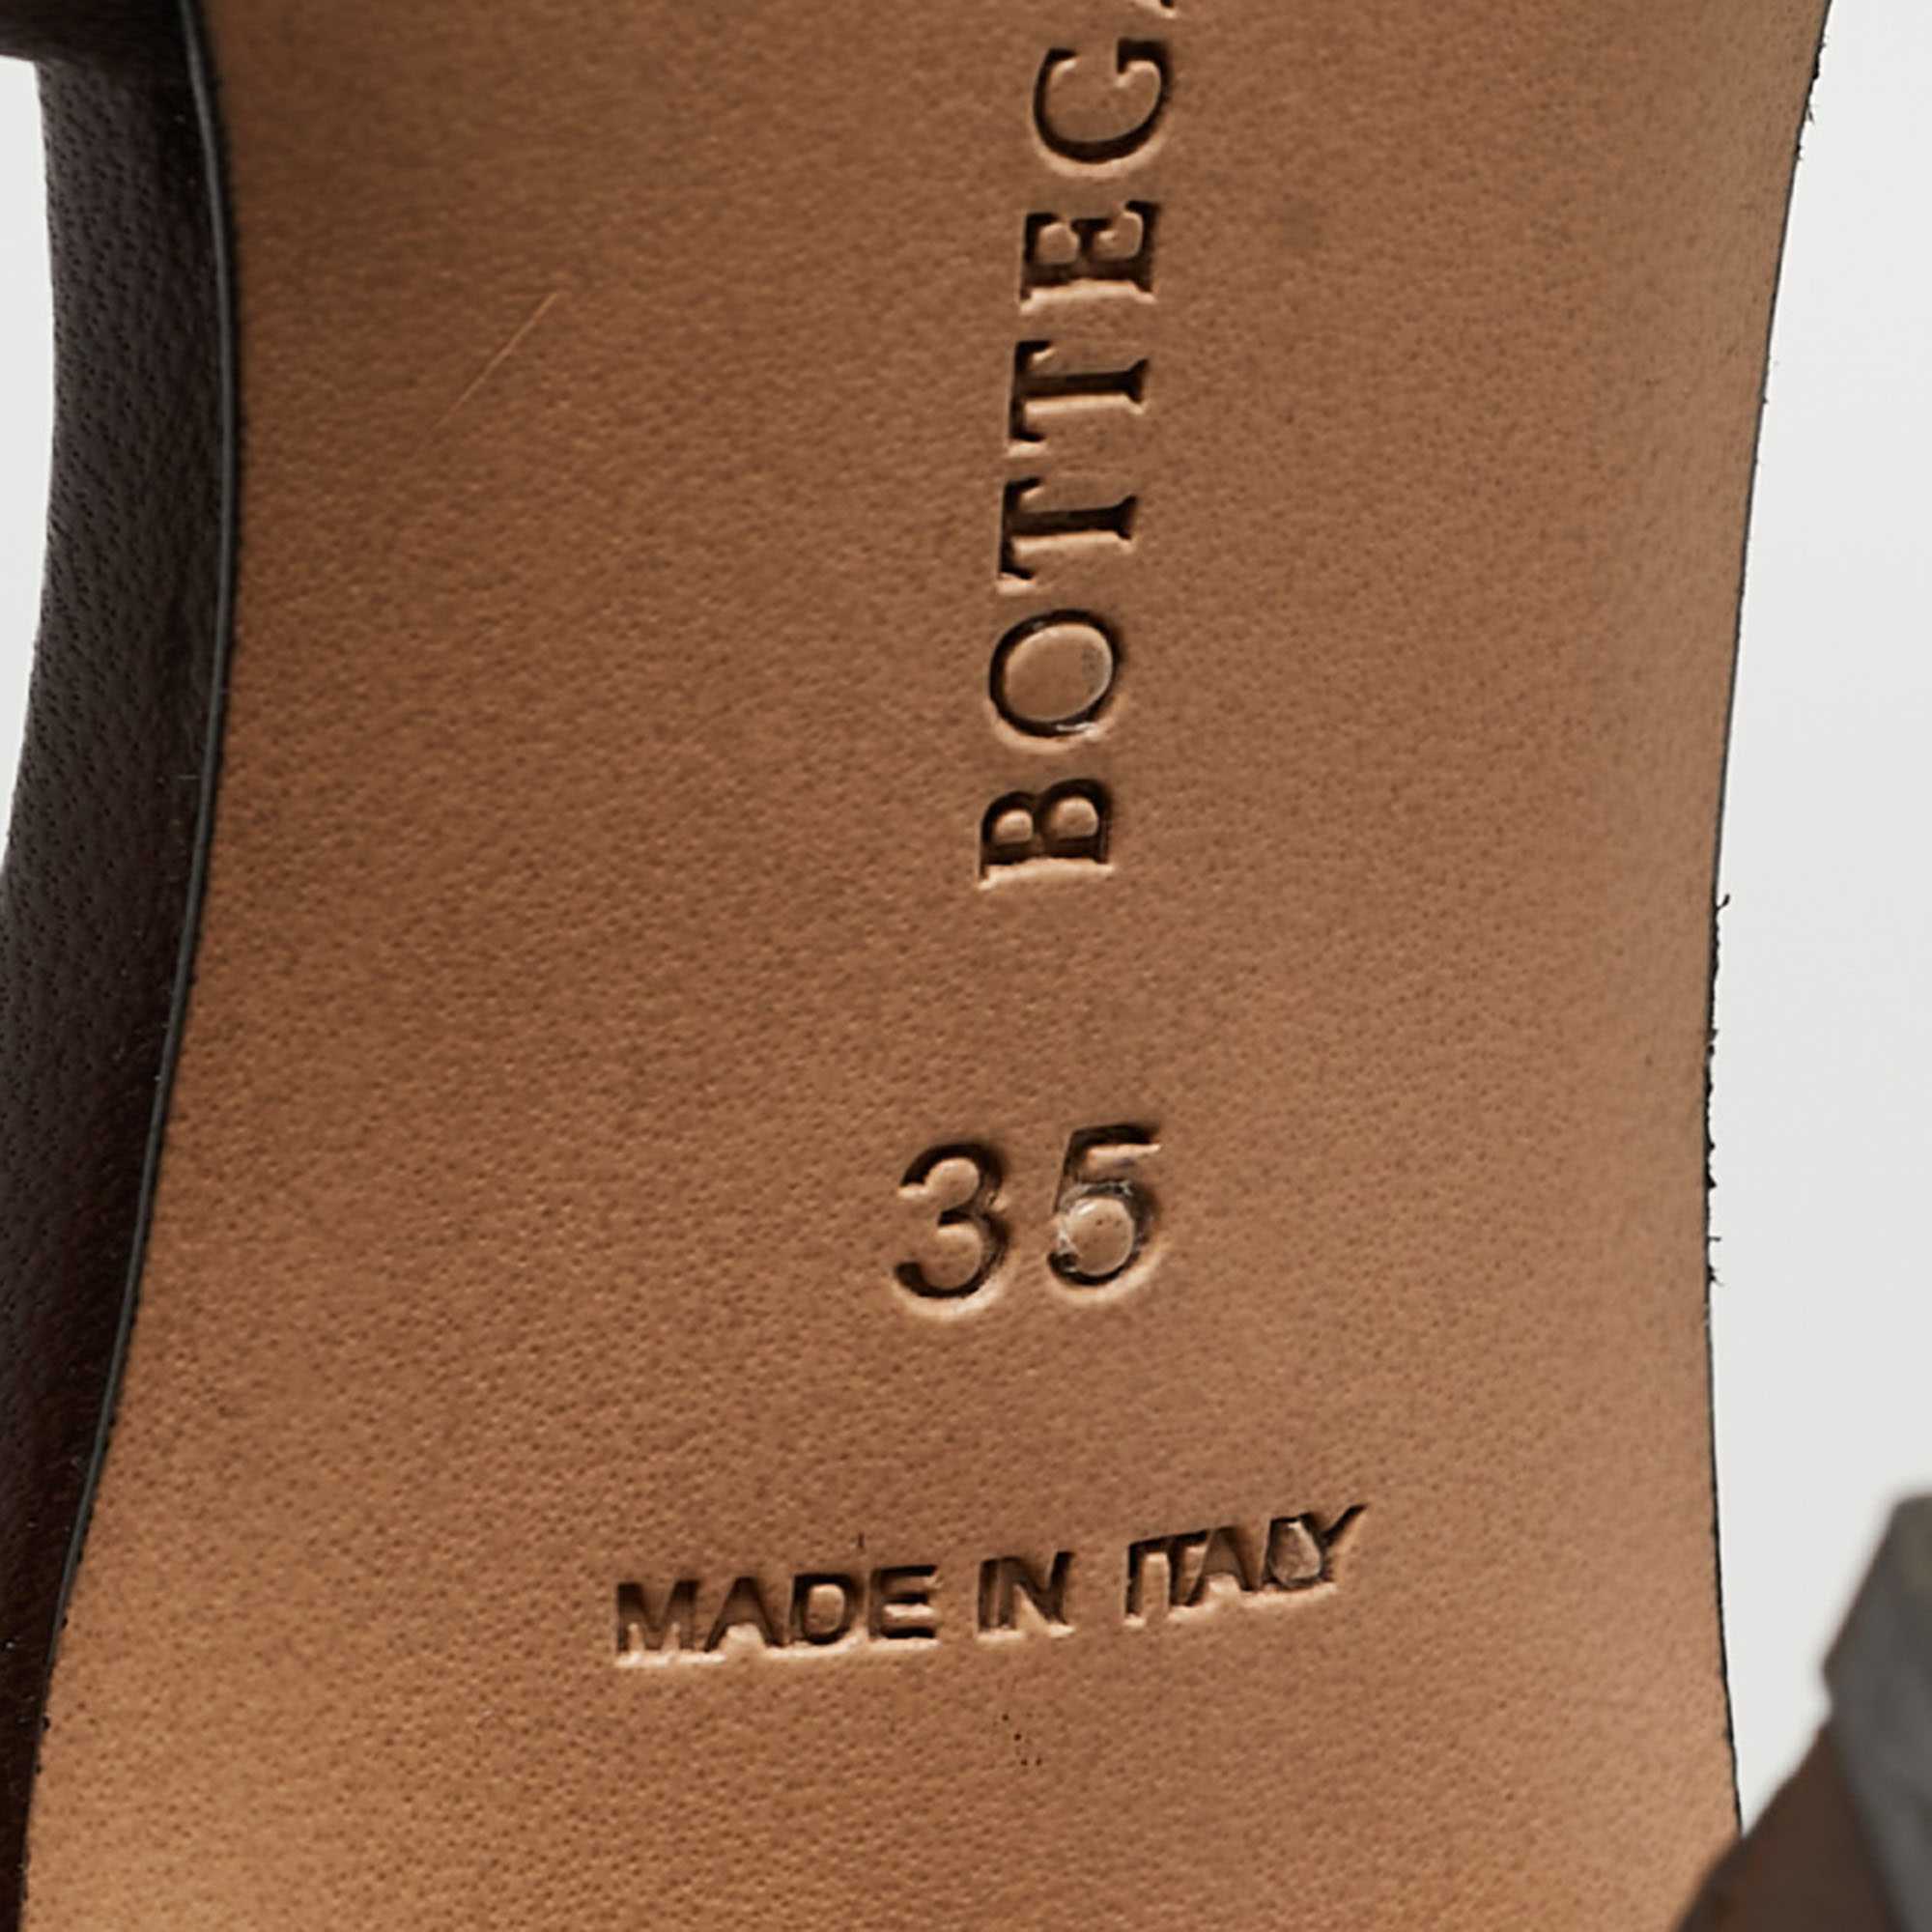 Bottega Veneta Brown Quilted Leather Slide Sandals Size 35